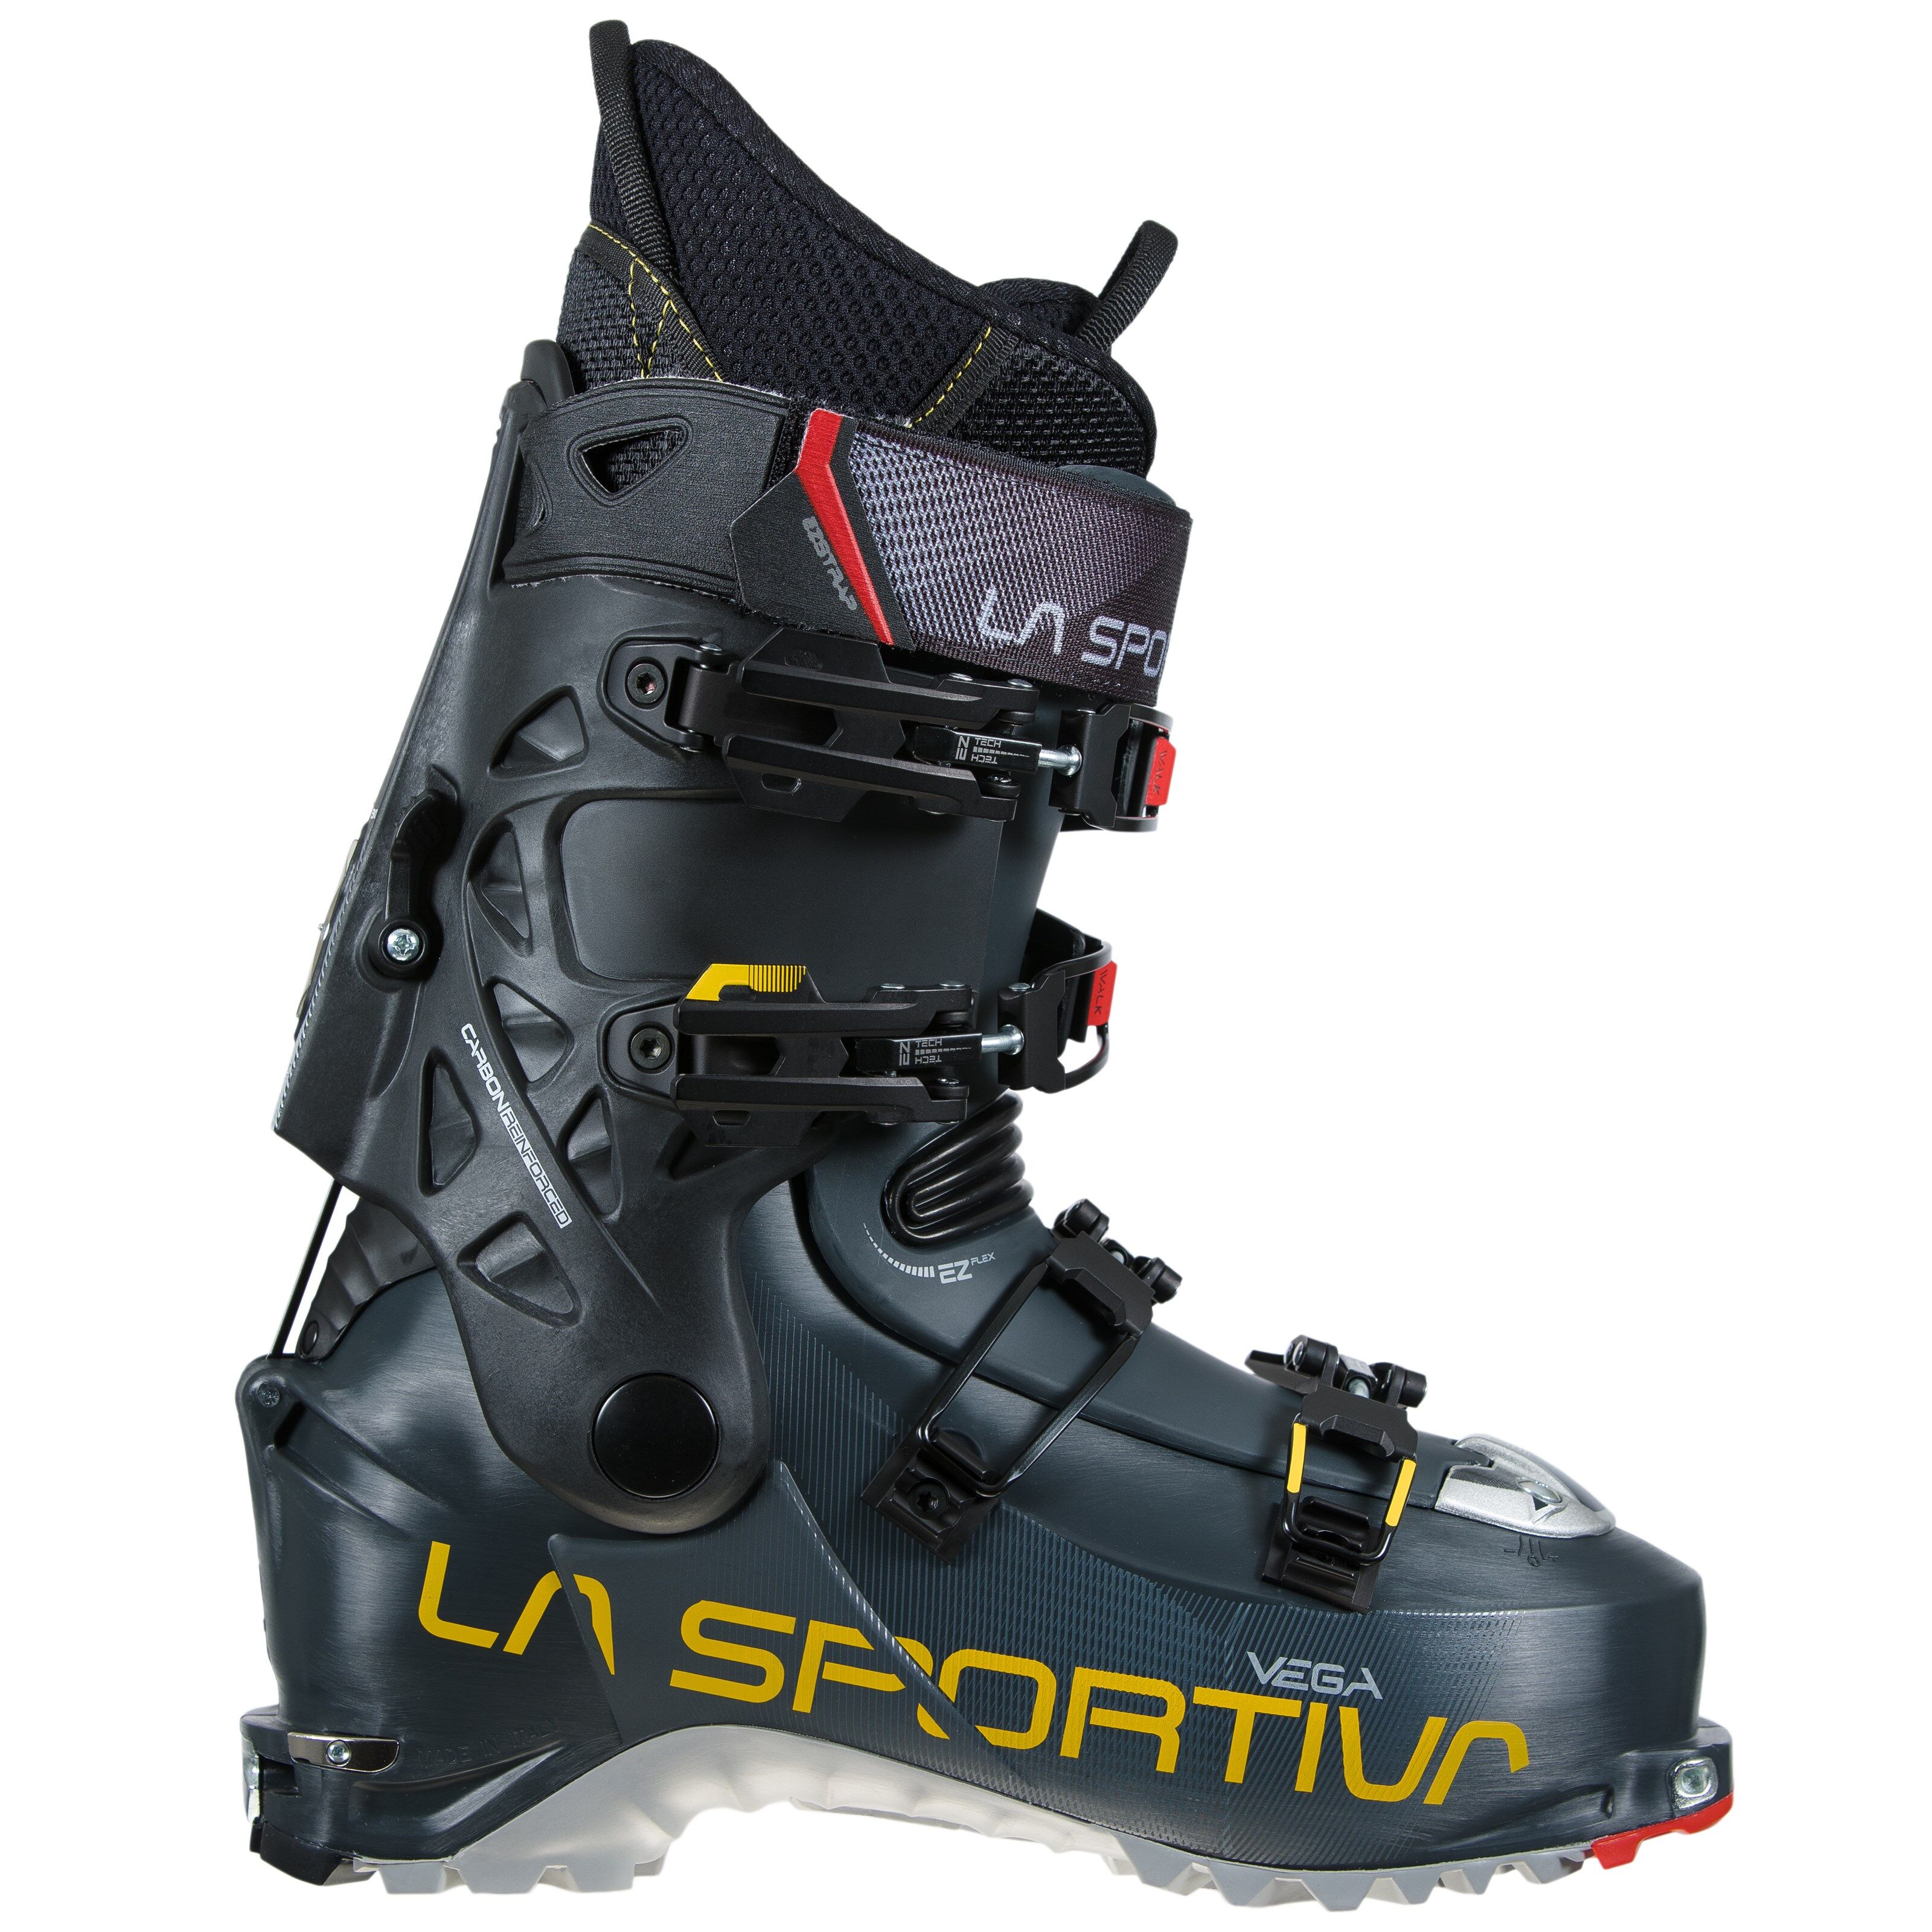 La Sportiva Vega toppturstøvler, herre 21/22 Carbon/Yellow 28,5 2020